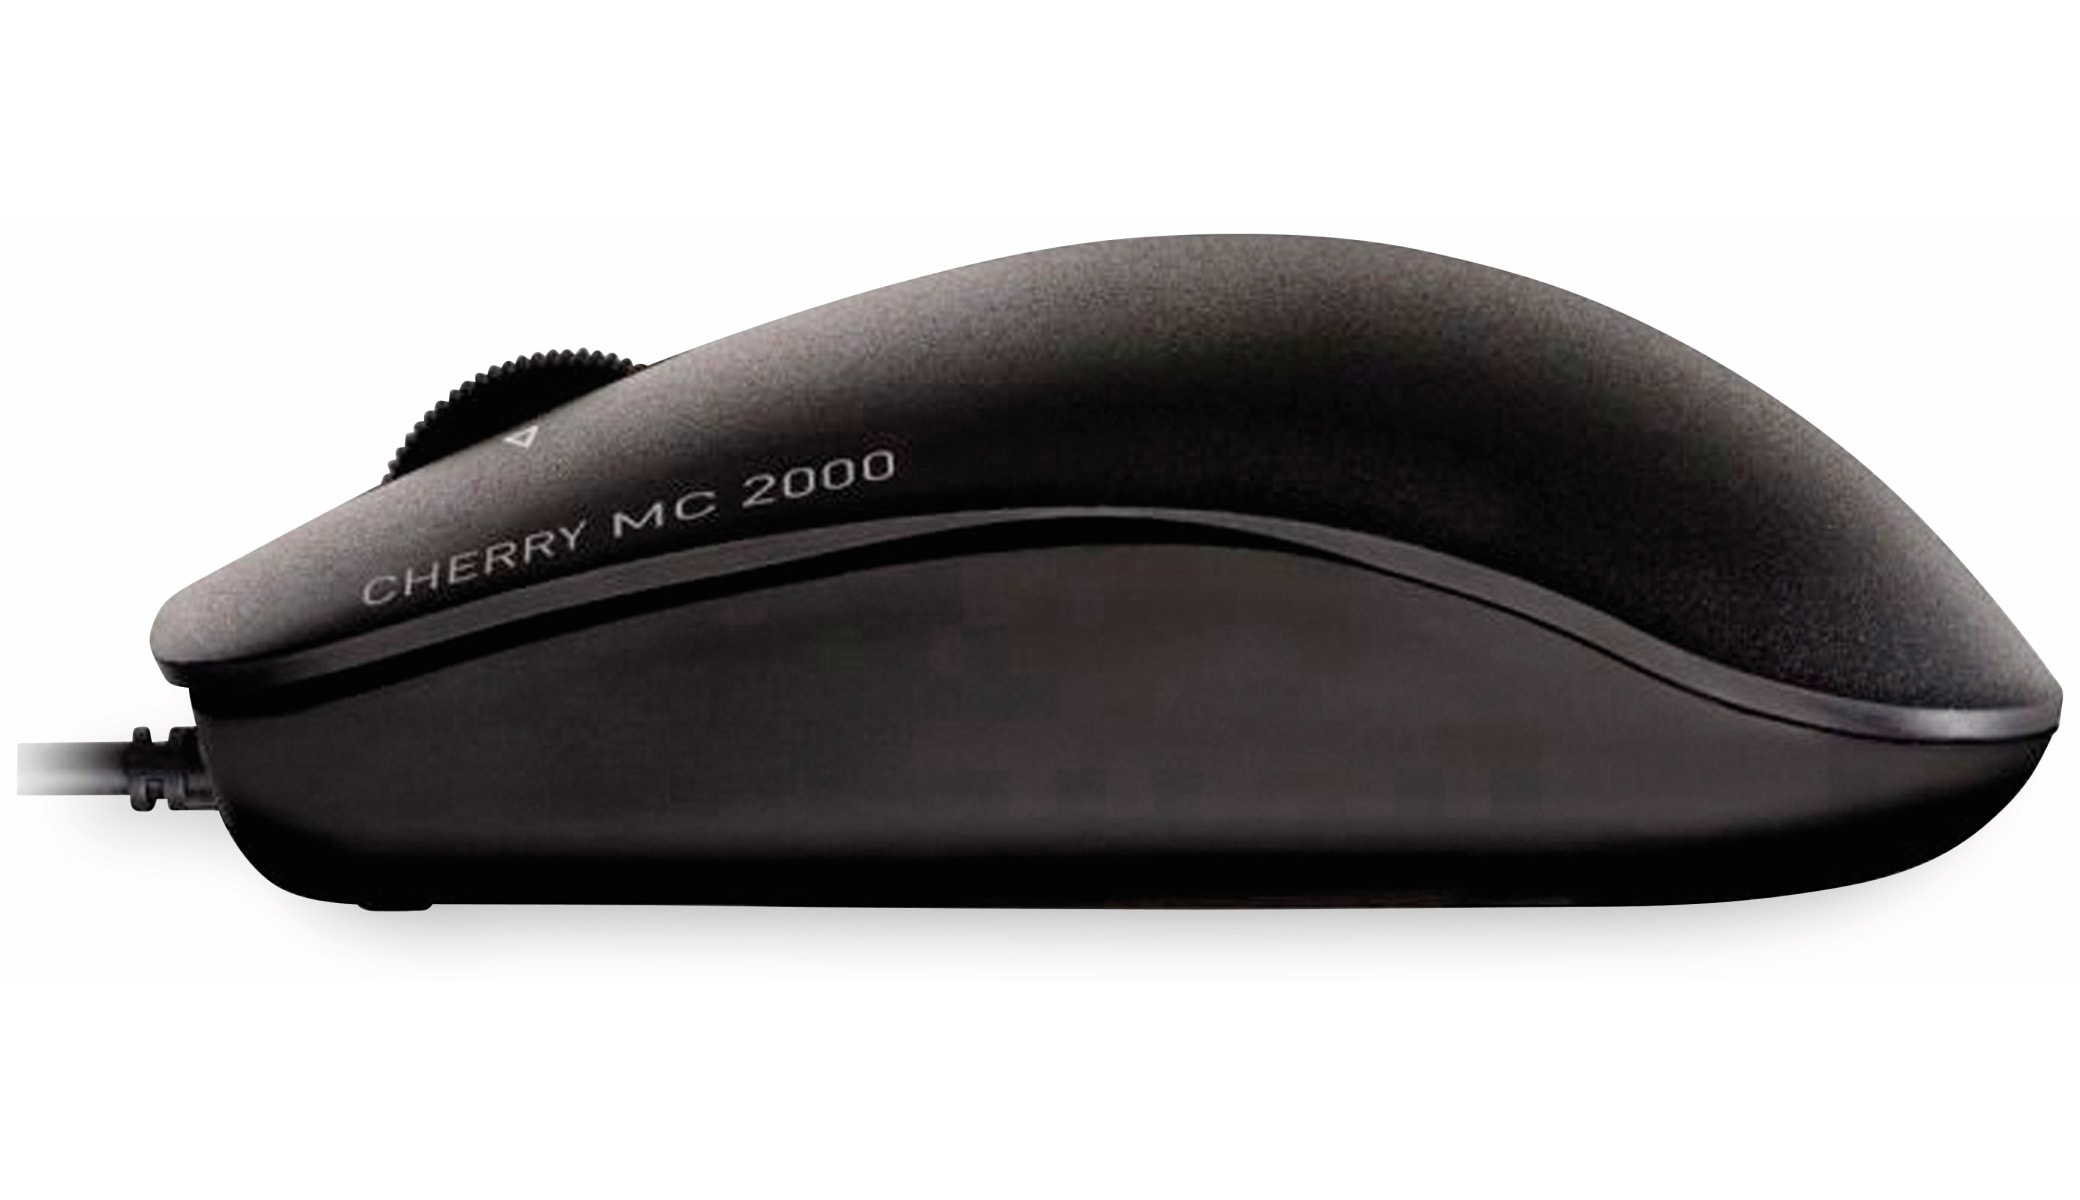 CHERRY Maus MC 2000, schwarz